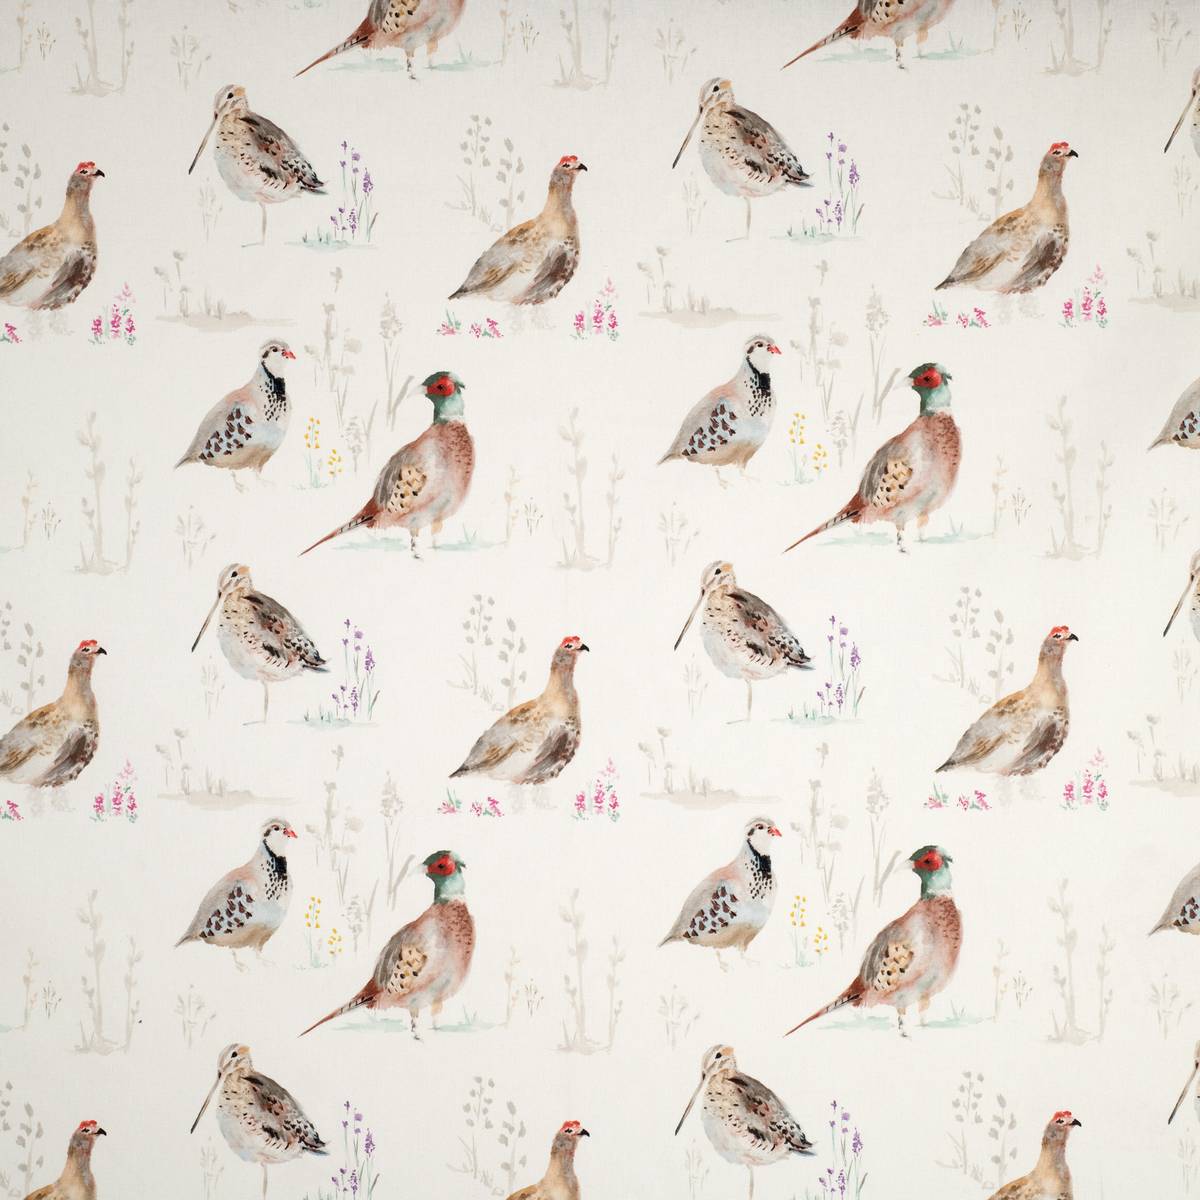 Gamebird Multi Fabric by Ashley Wilde